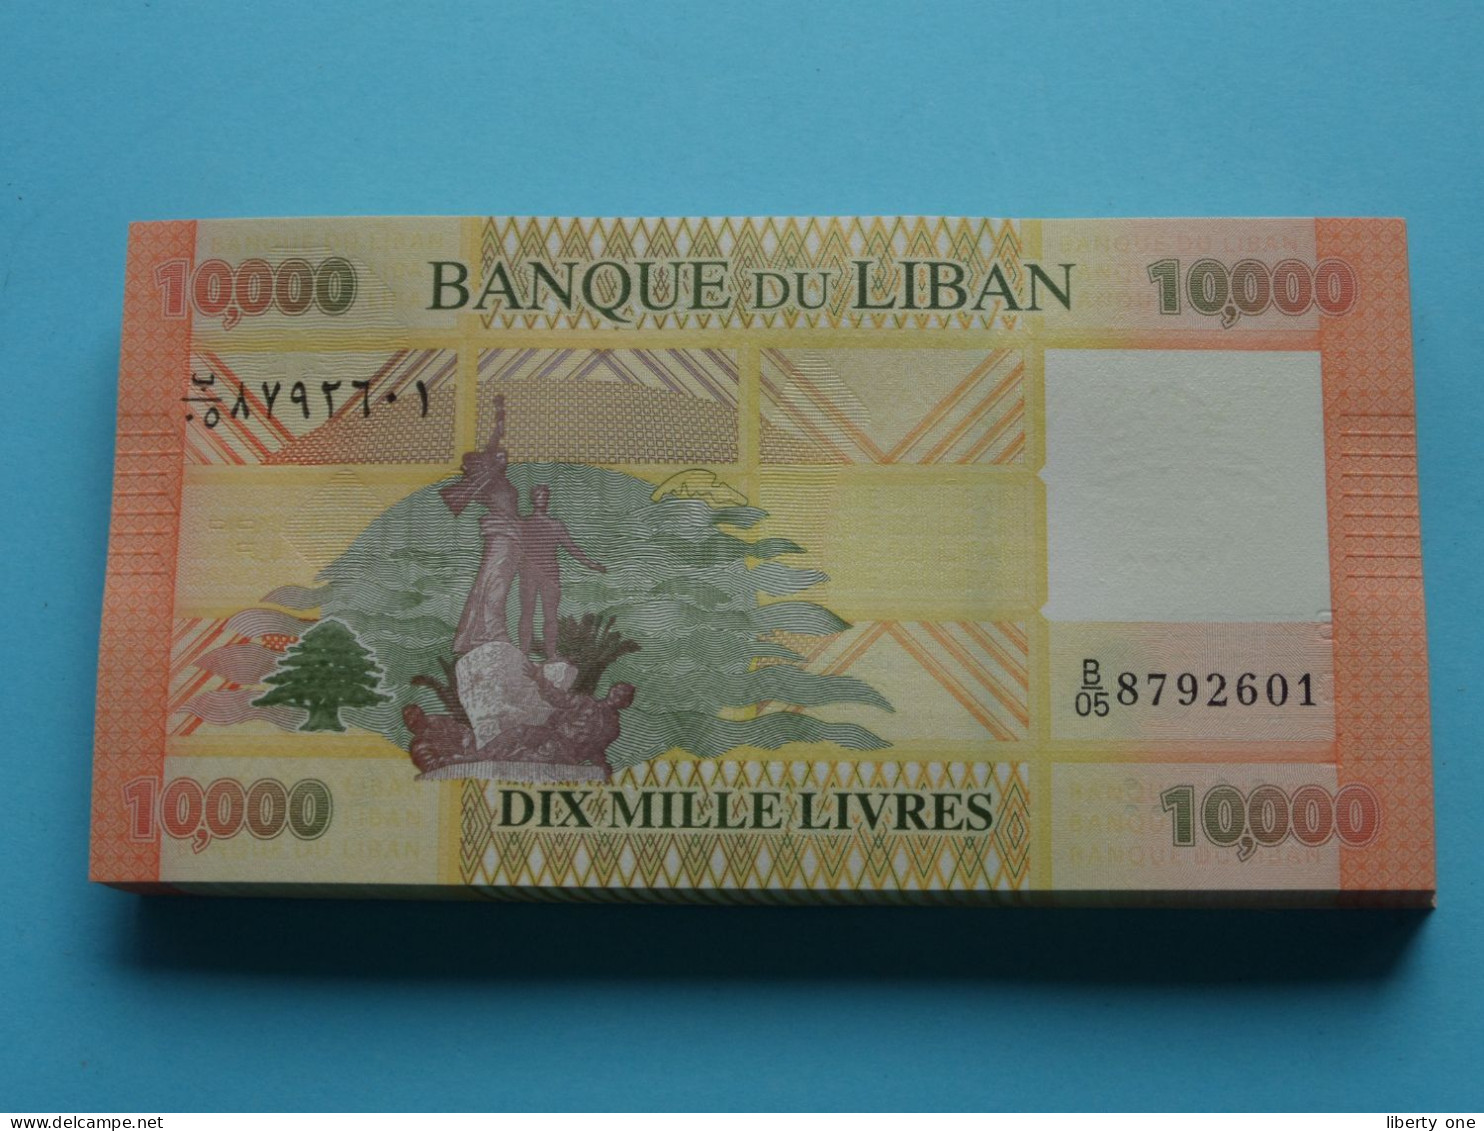 10.000 Dix Mille Livres ( Banque Du Liban ) Lebanon 2014 ( For Grade, Please See SCANS ) UNC ! - Liban